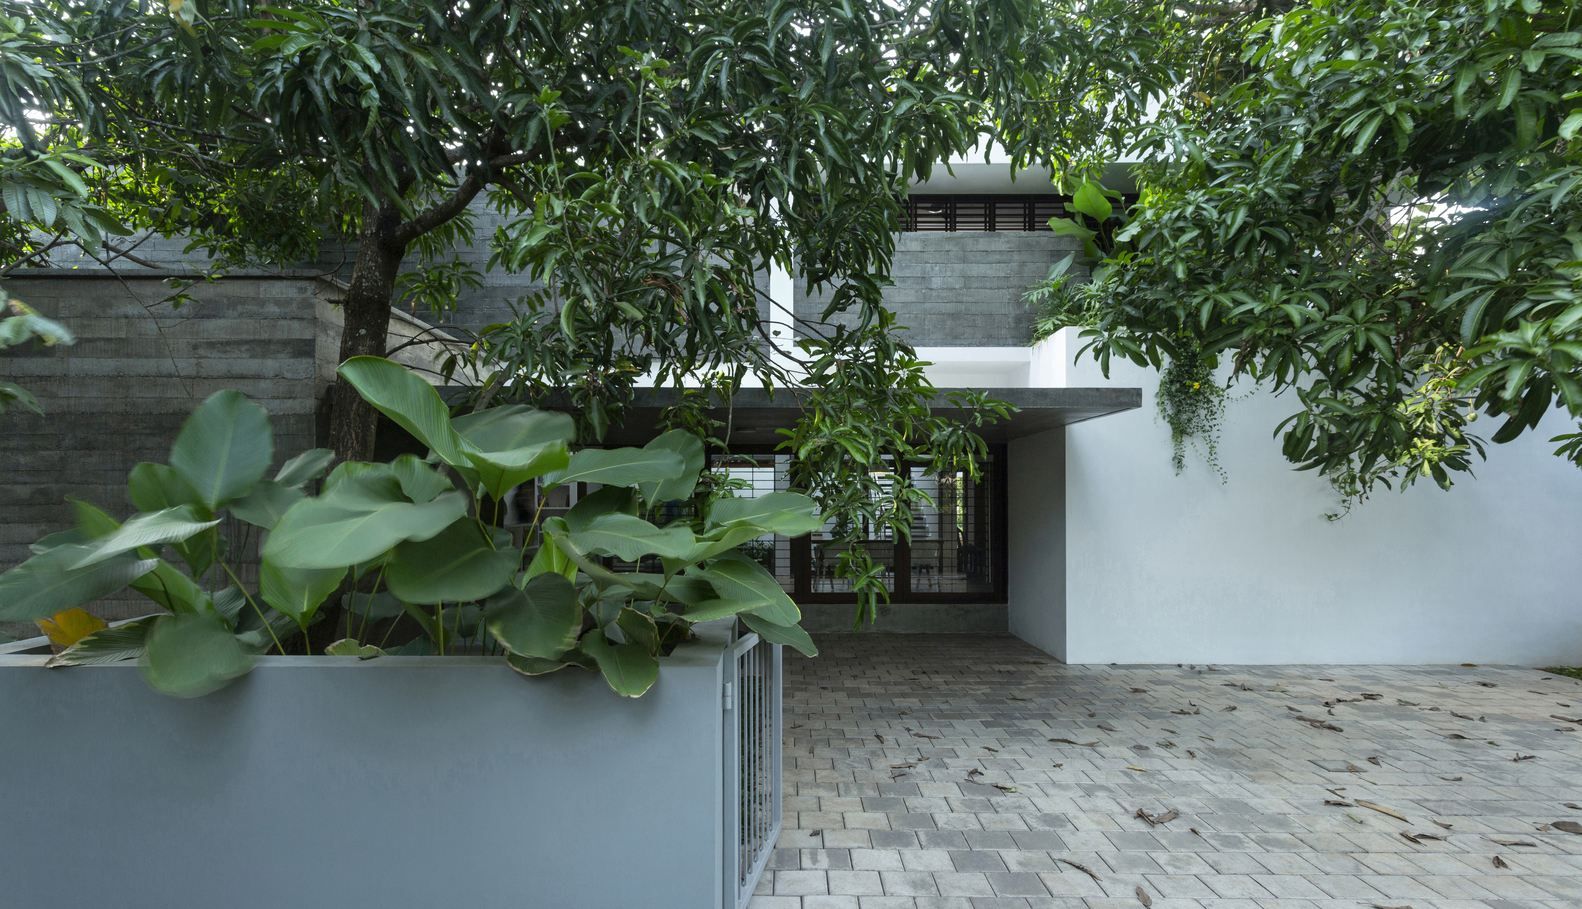 Квартира-джунгли – цветной дизайн для большой семьи в Индии: фото